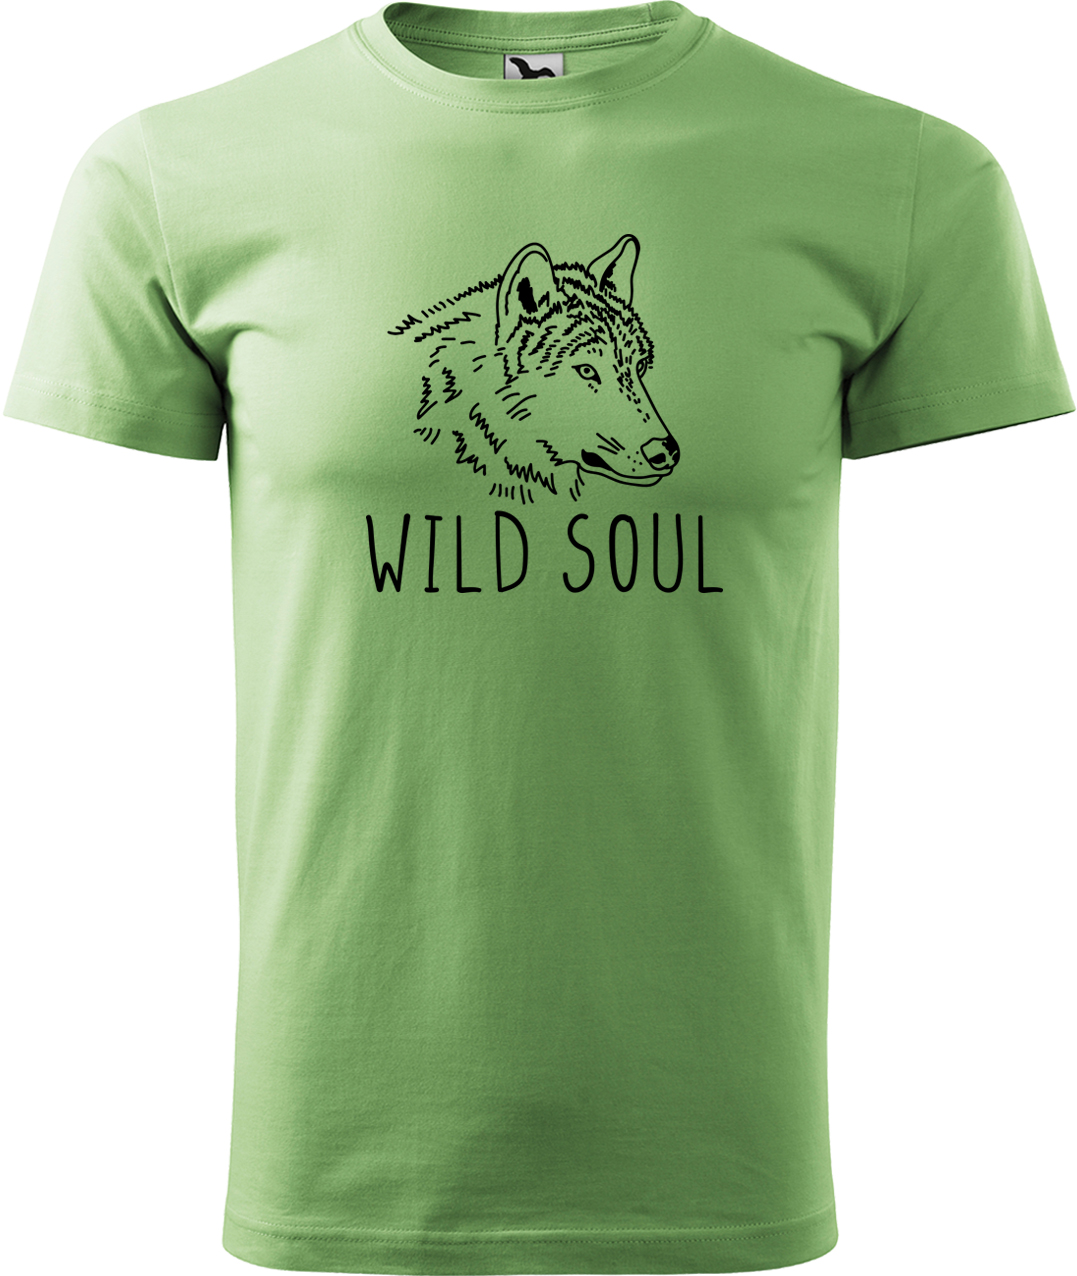 Pánské tričko s vlkem - Wild soul Velikost: XL, Barva: Trávově zelená (39), Střih: pánský